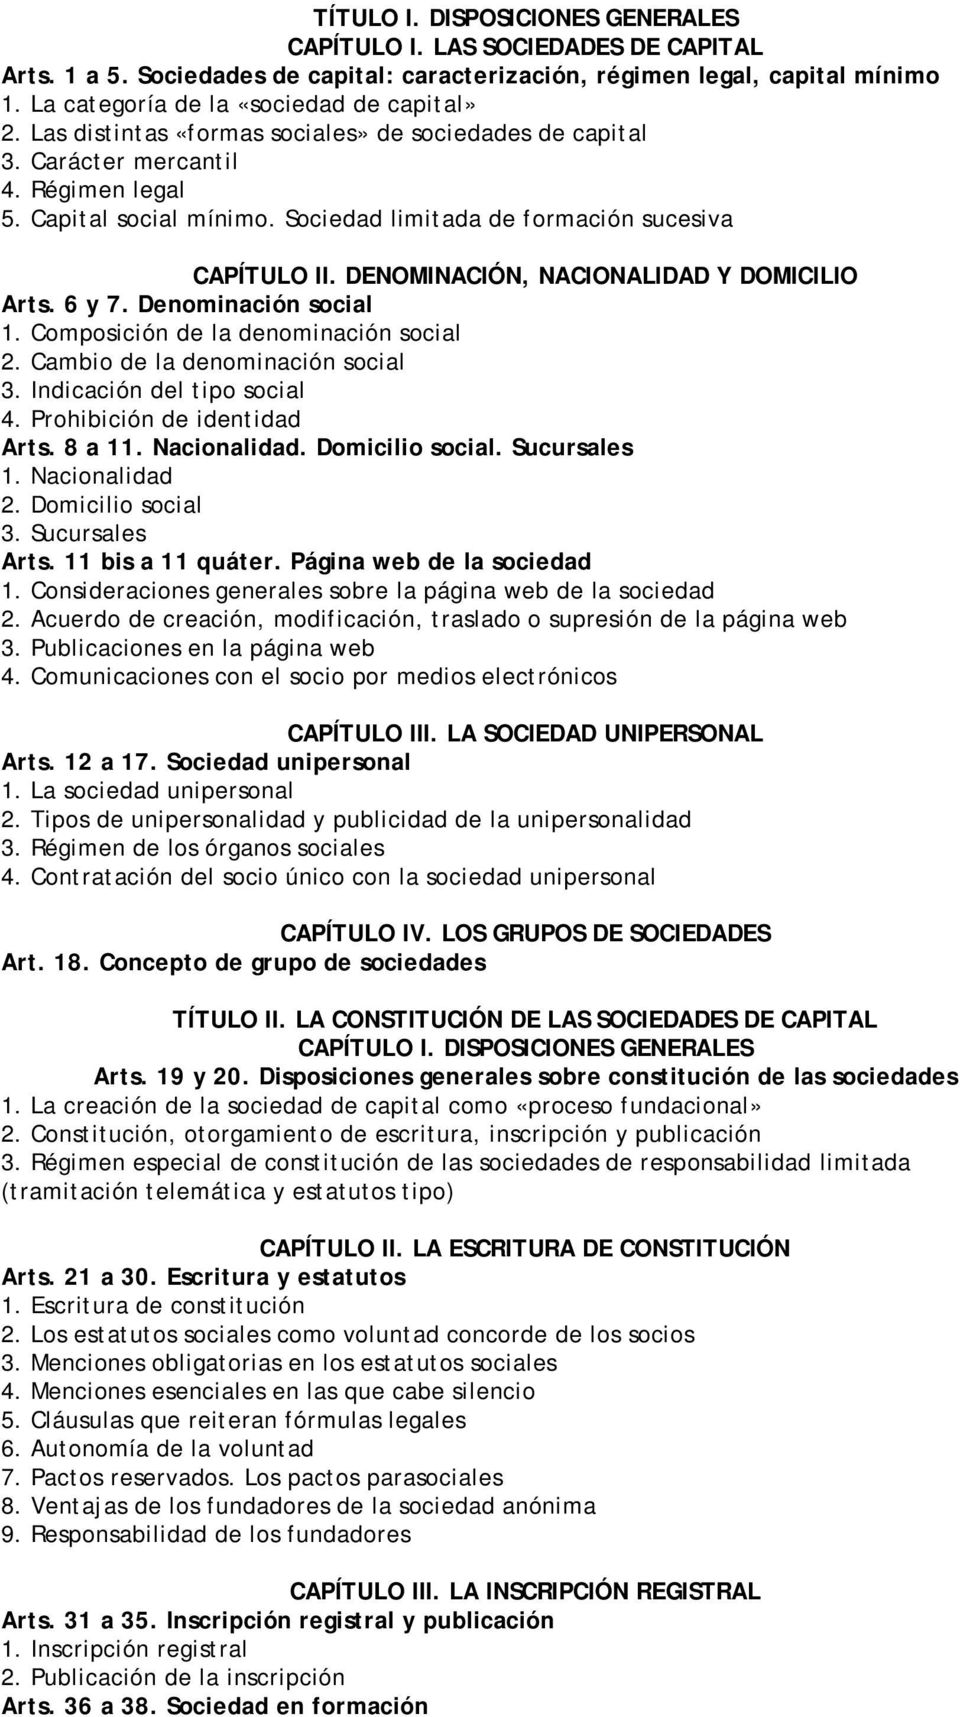 Sociedad limitada de formación sucesiva CAPÍTULO II. DENOMINACIÓN, NACIONALIDAD Y DOMICILIO Arts. 6 y 7. Denominación social 1. Composición de la denominación social 2.